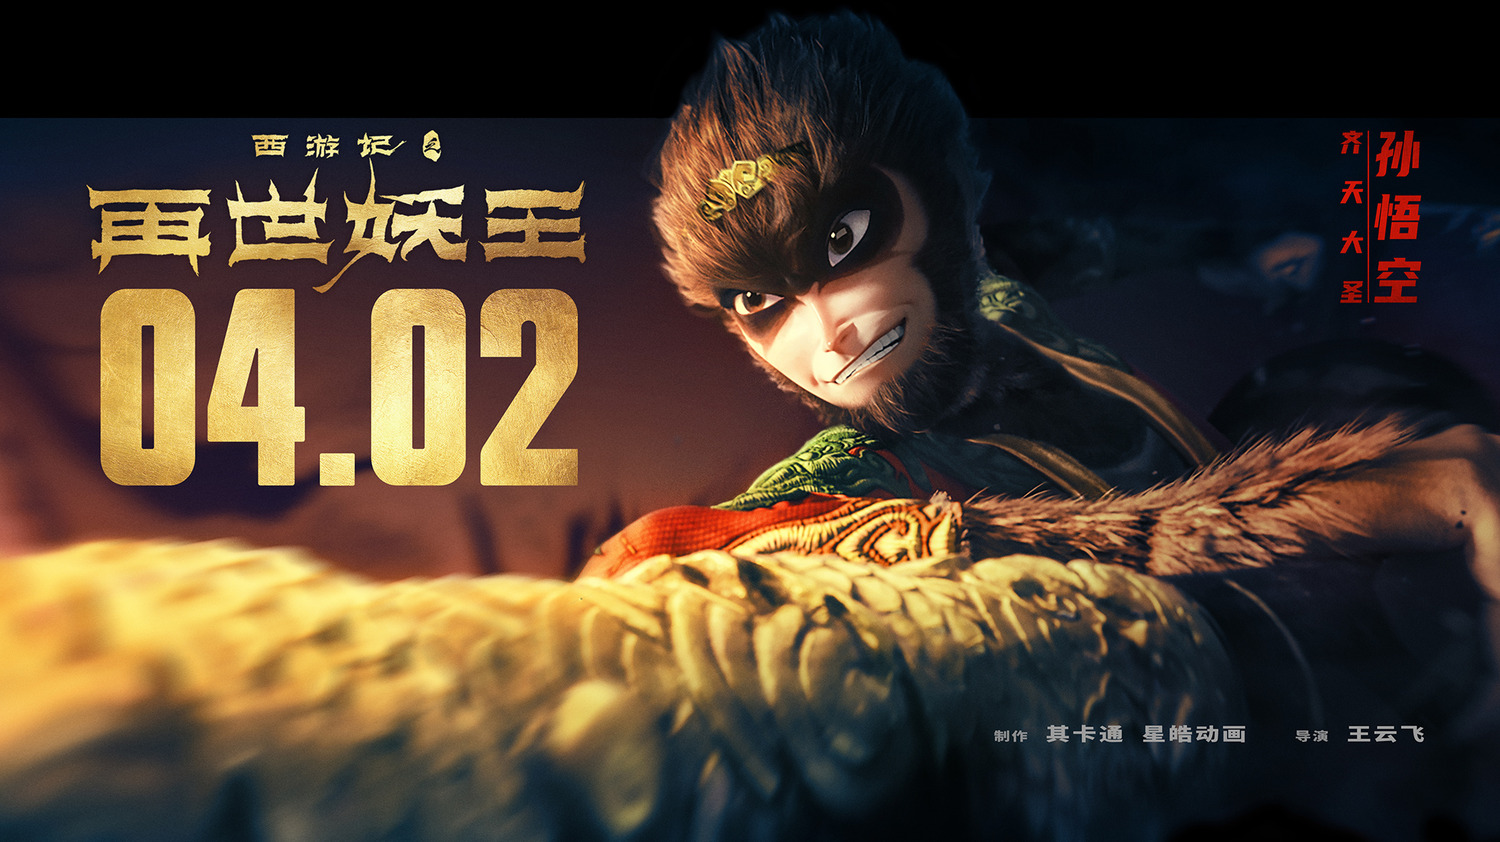 Extra Large Movie Poster Image for Xi You Ji Zhi Zai Shi Yao Wang (#16 of 21)